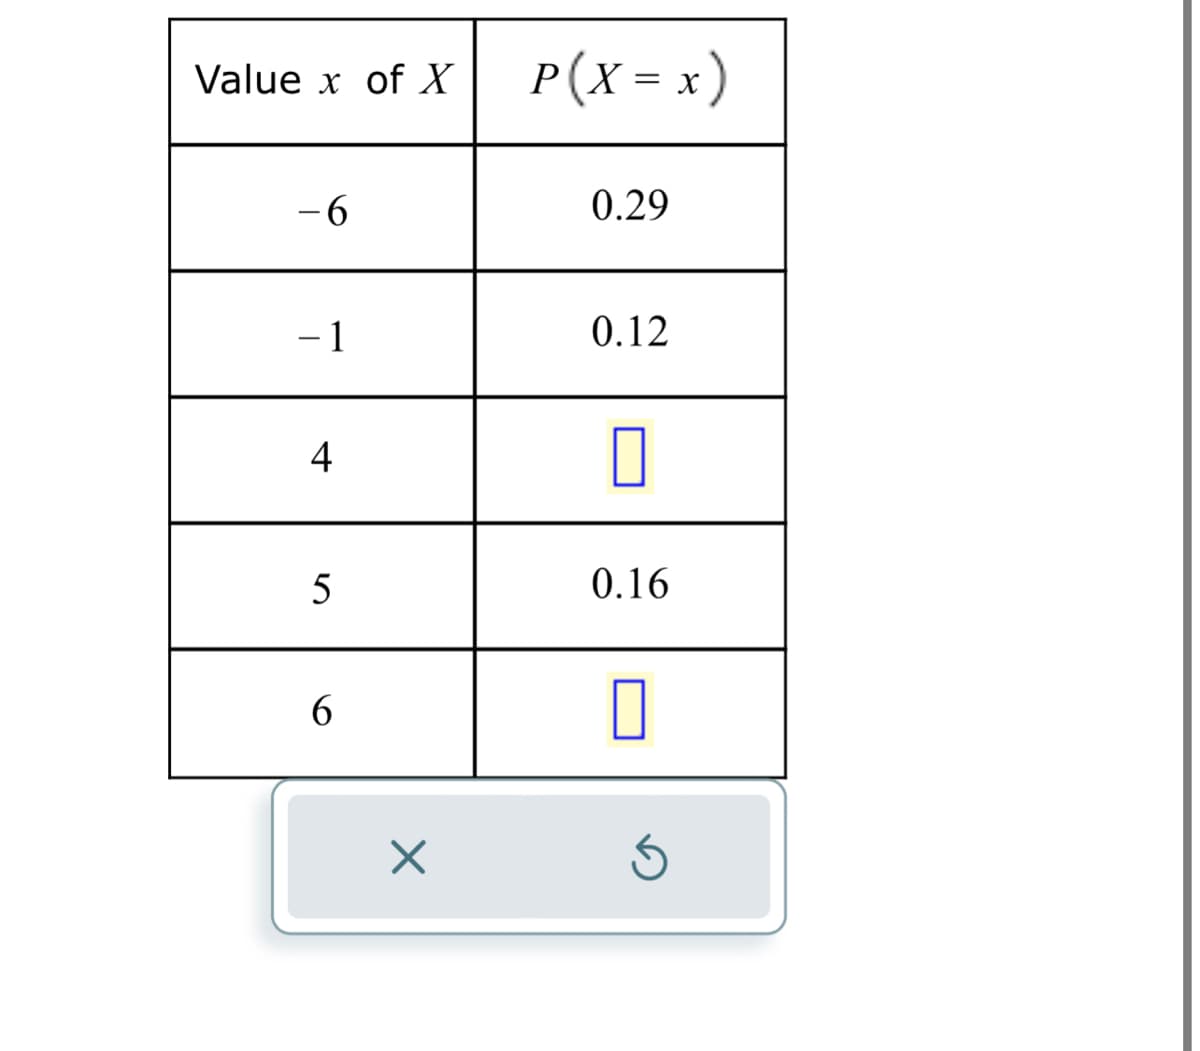 Value x of X
- 6
-1
4
5
6
X
P ( X = x )
0.29
0.12
0
0.16
0
Ś